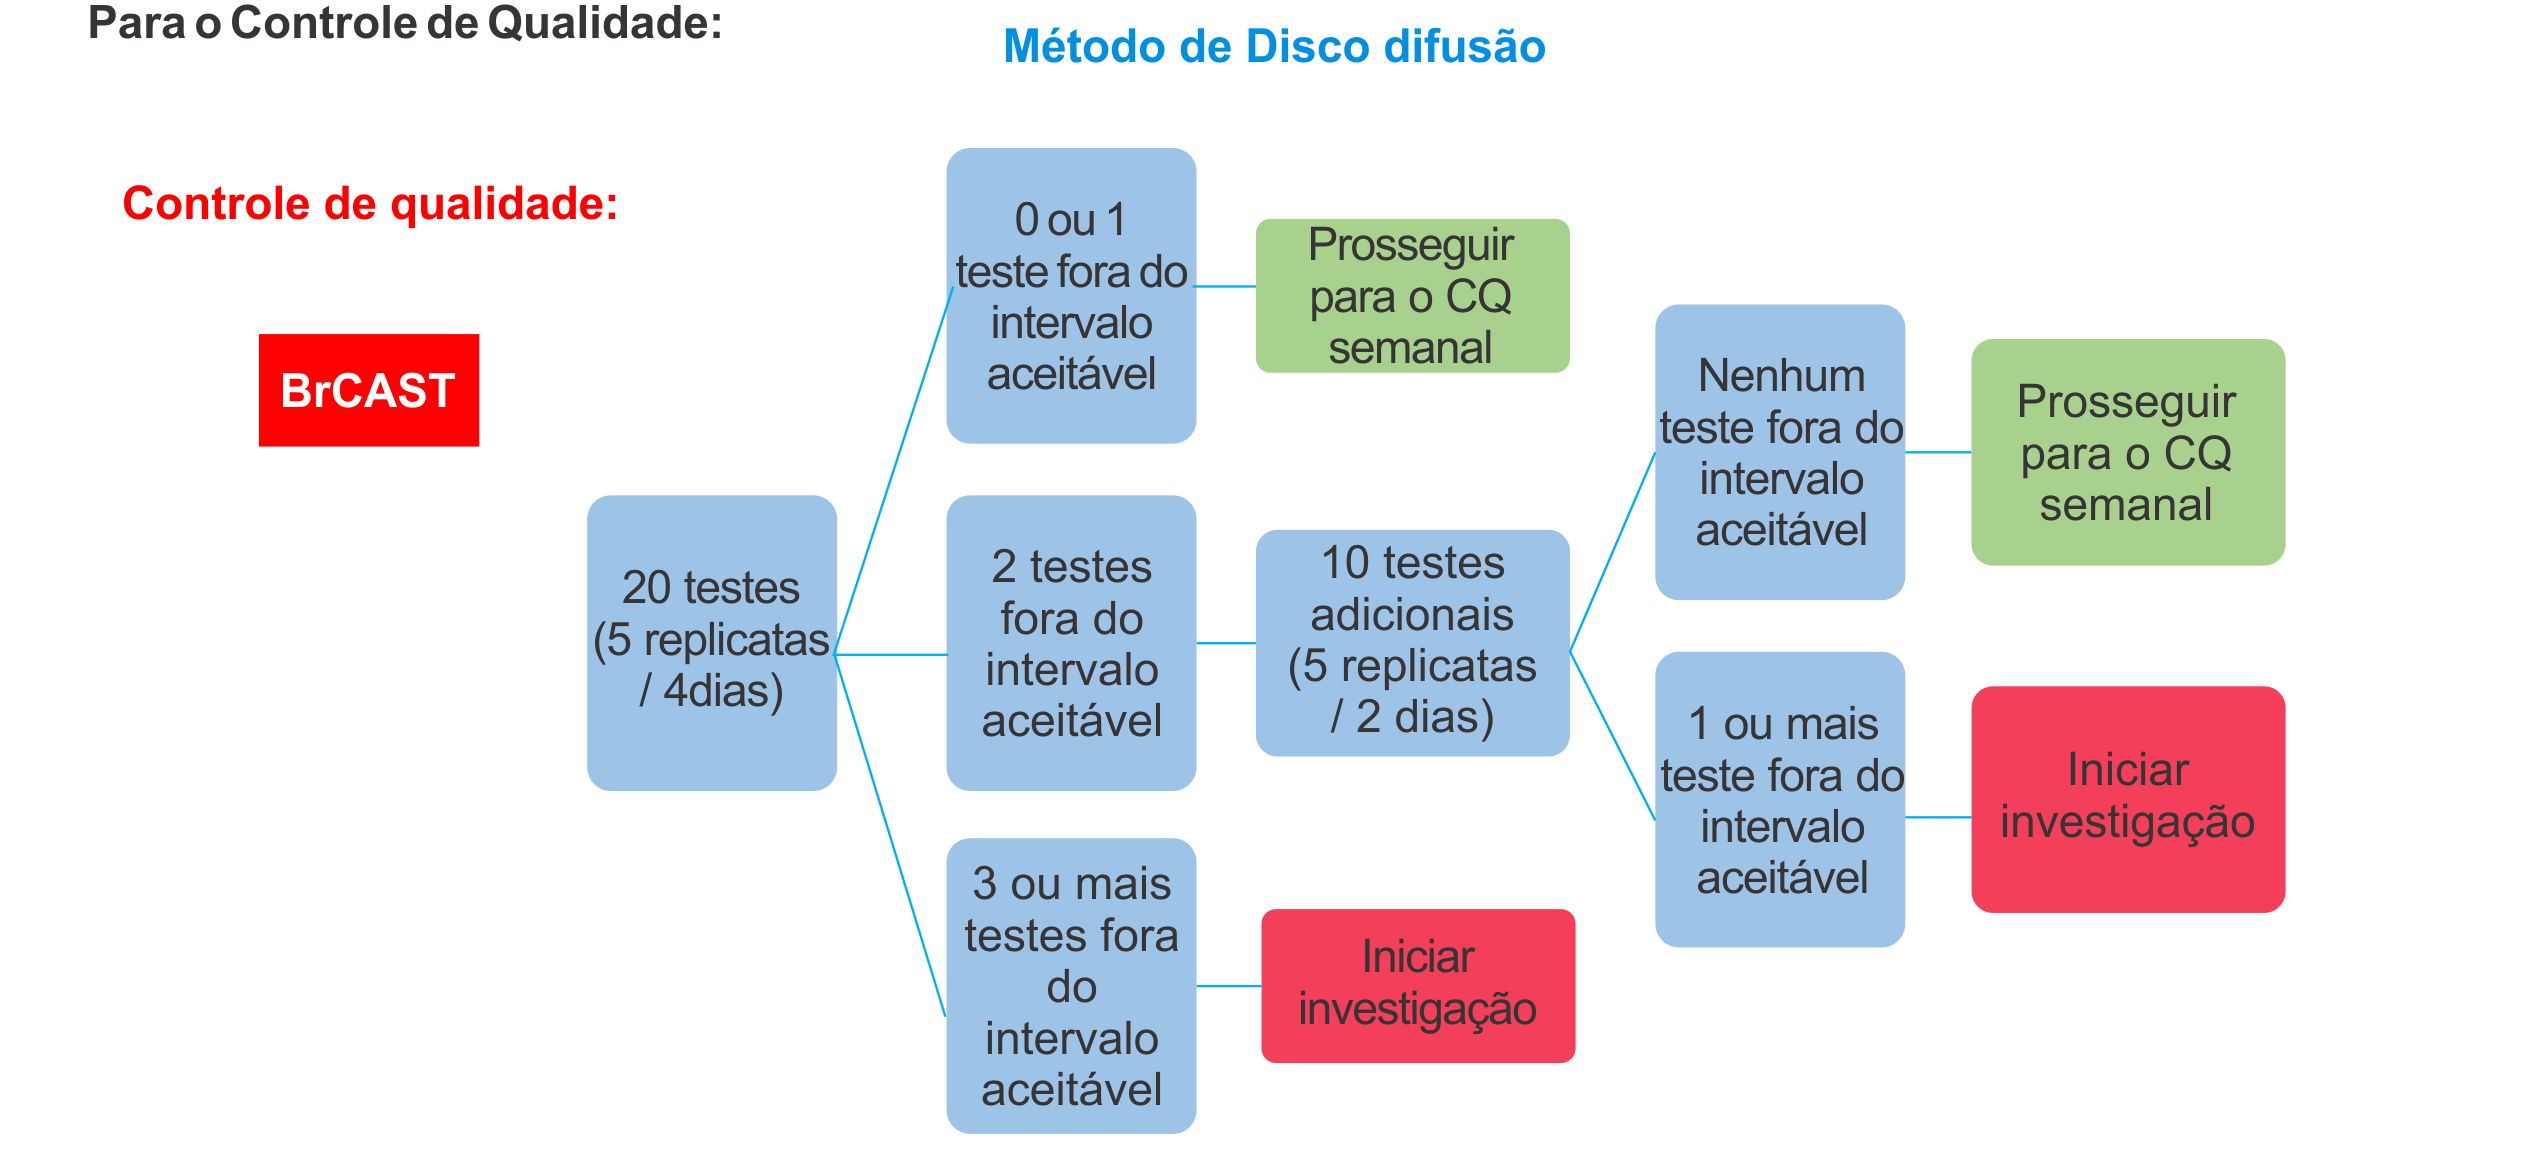 Método de Disco difusão